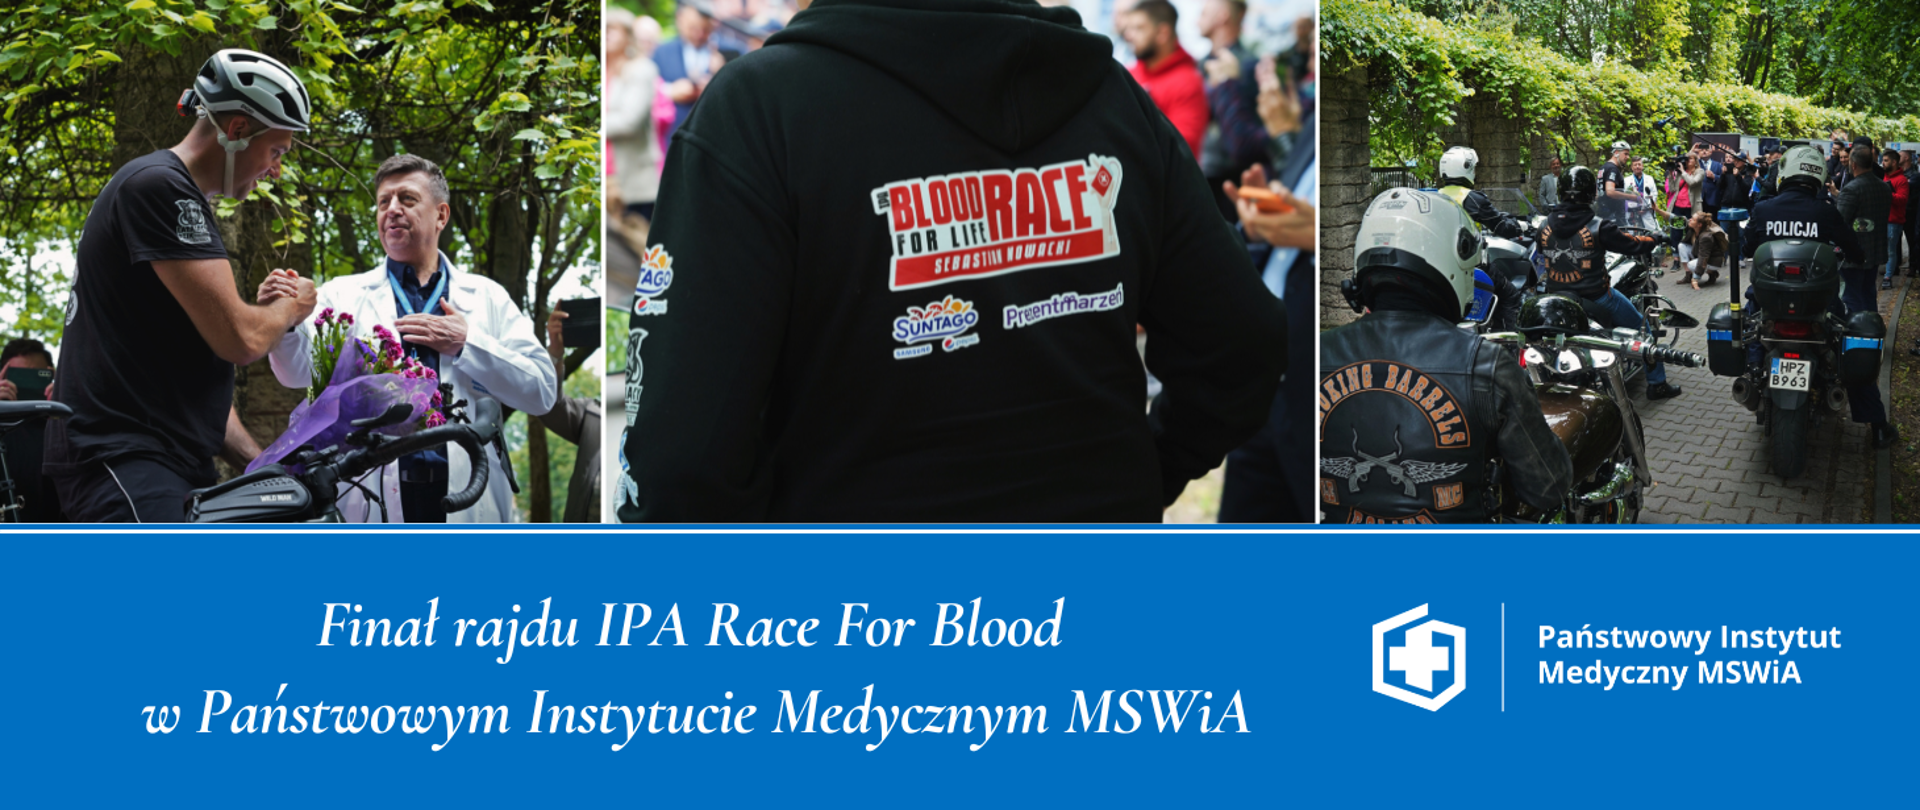 Finał rajdu IPA Race For Blood w Państwowym Instytucie Medycznym MSWiA